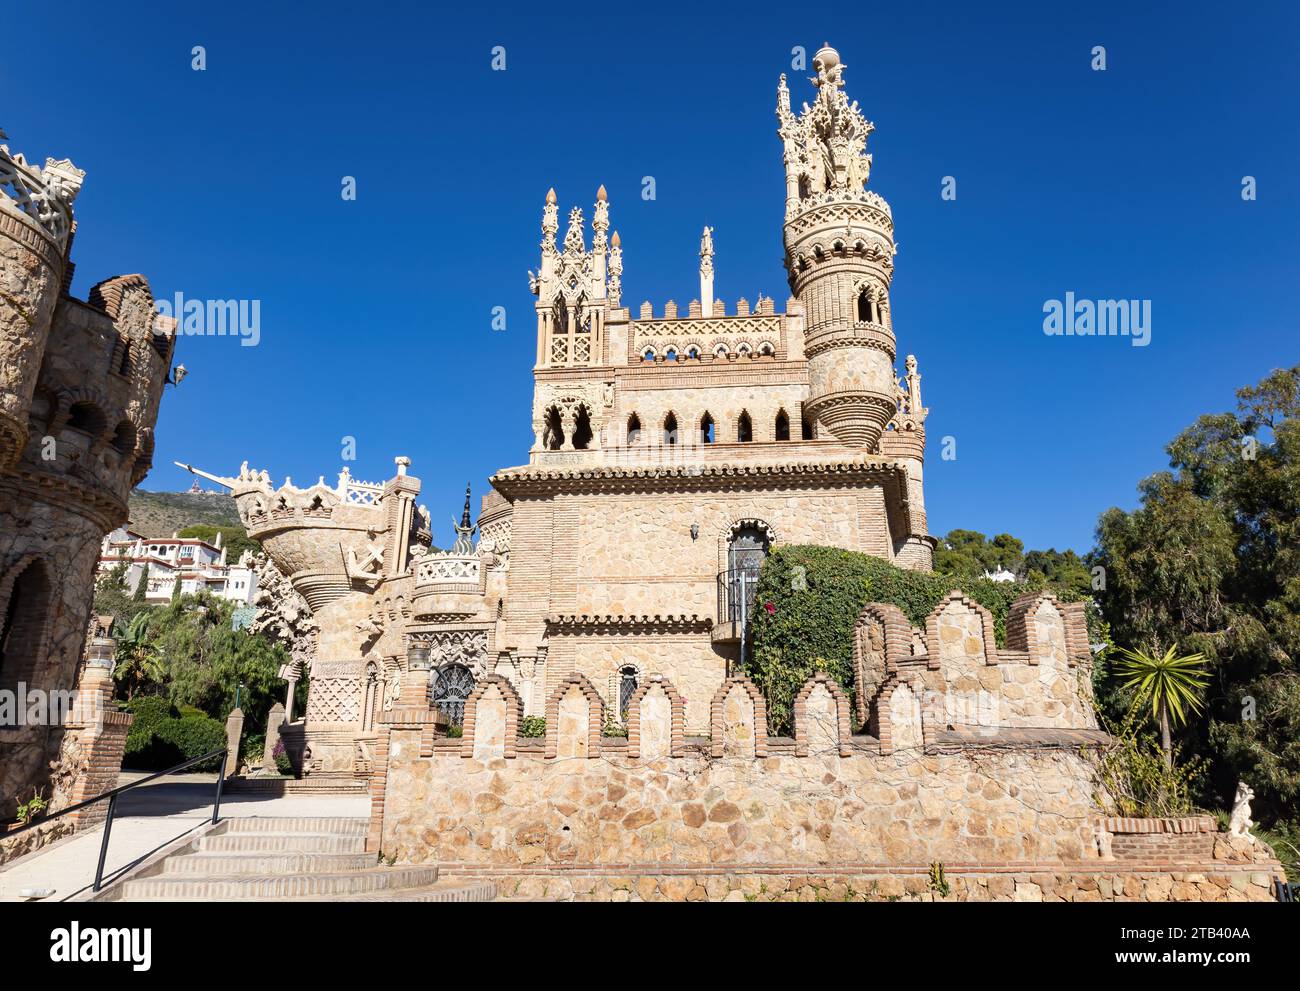 Facciata esterna del monumento Castillo de Colomares, a forma di castello, dedicato alla vita e alle avventure di Cristoforo Colombo a Benalmáden Foto Stock